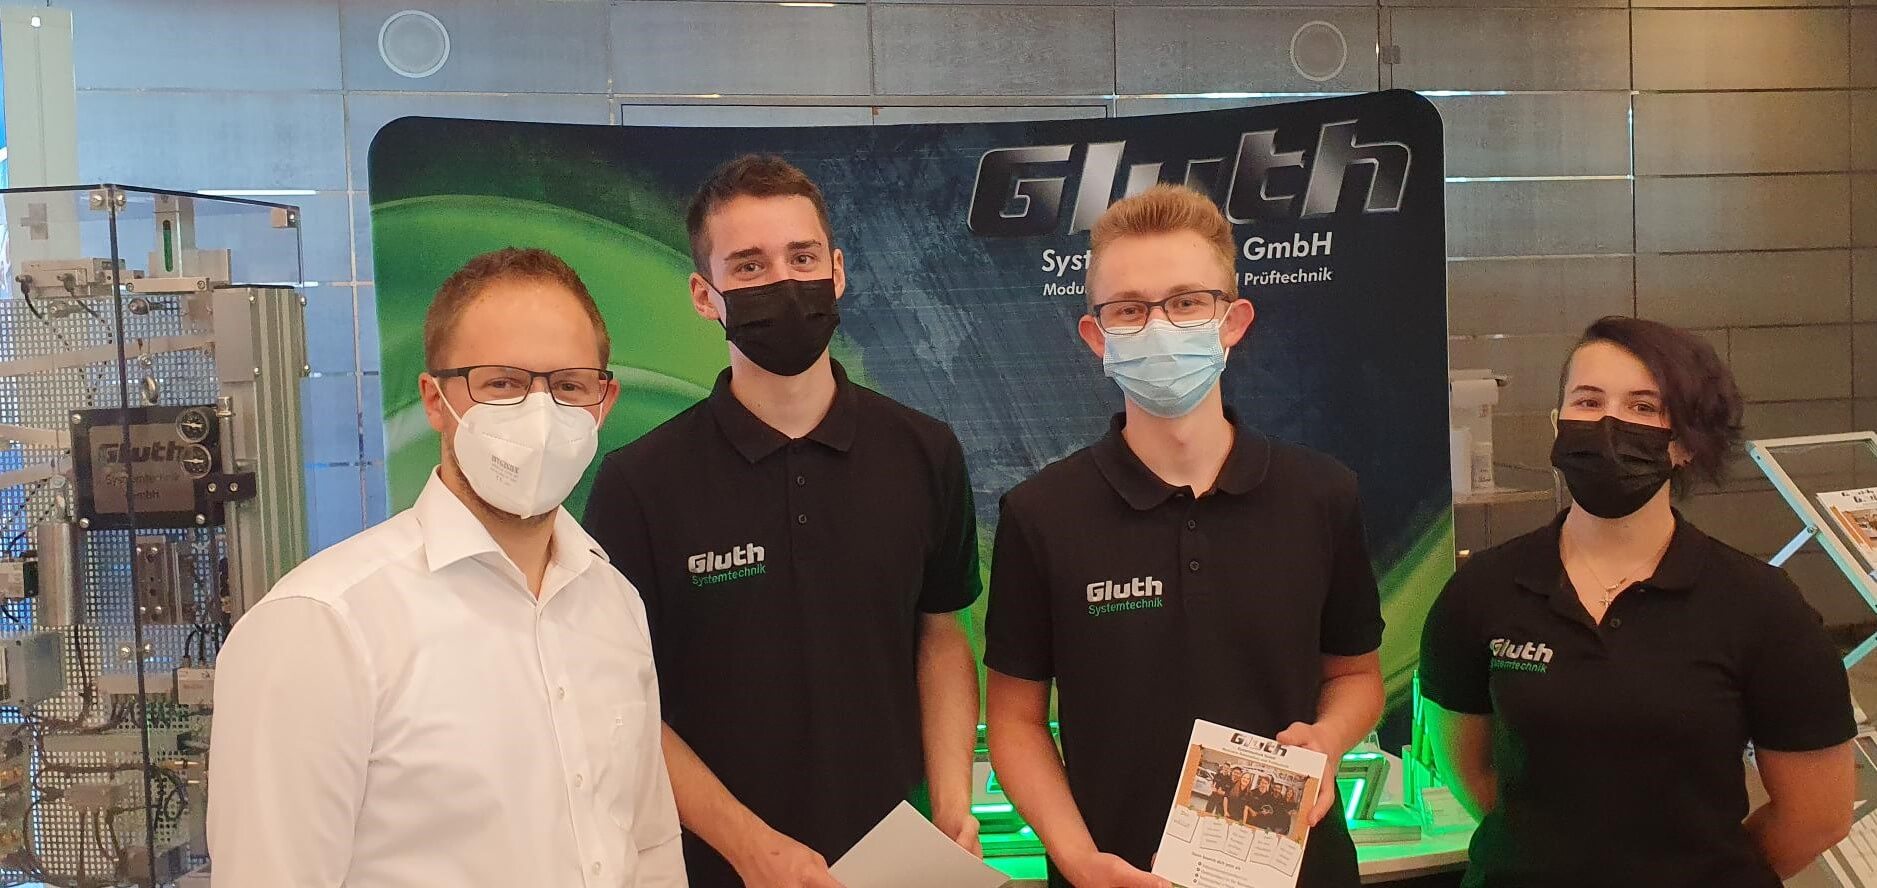 Ausbildungsmesse 2021, Mitarbeiter der Firma Gluth in Masken stehen vor dem Messestand